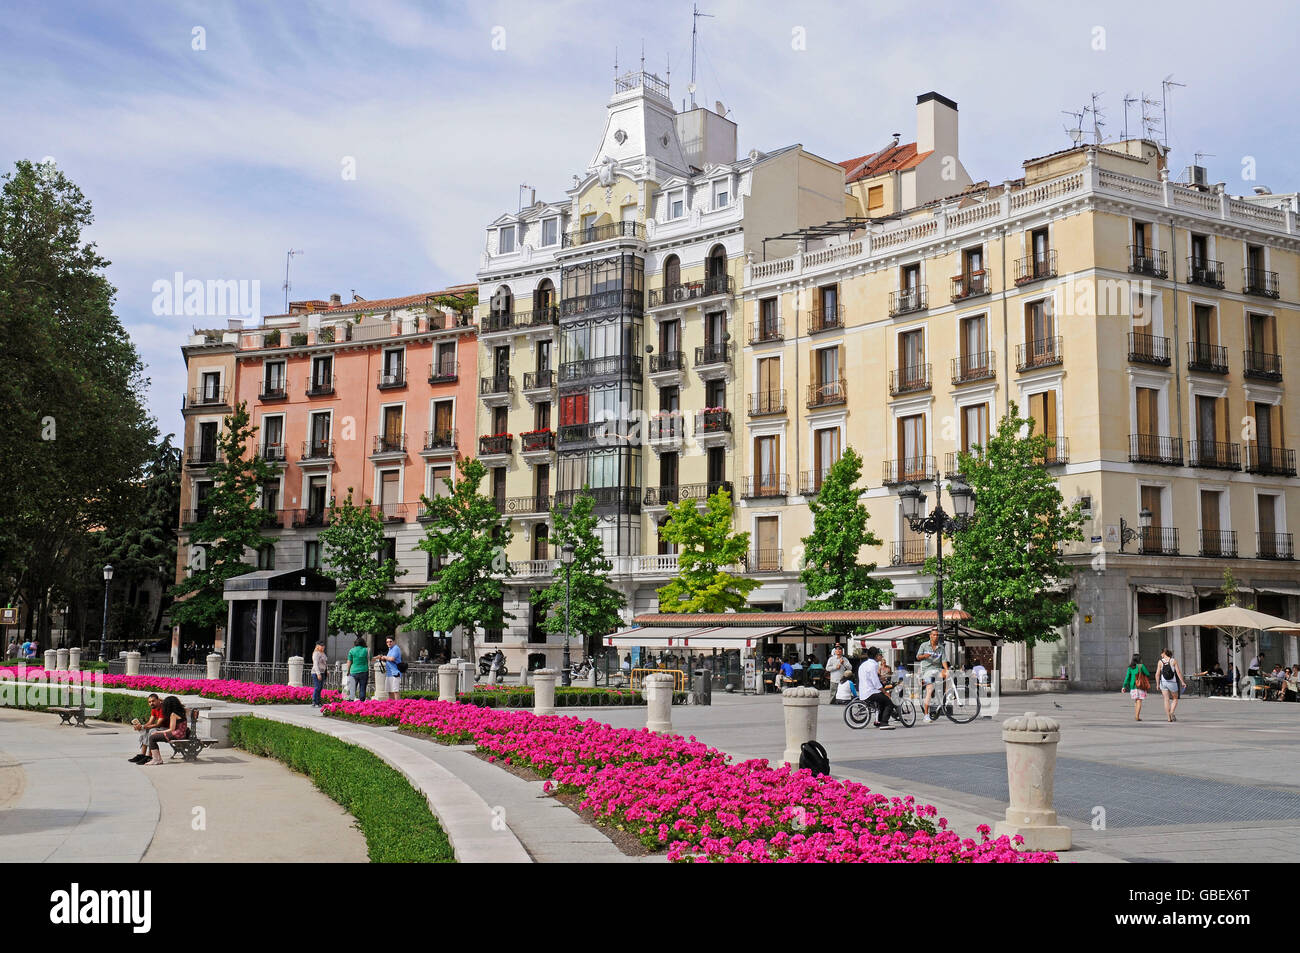 Plaza de Oriente square, Madrid, Spain Stock Photo